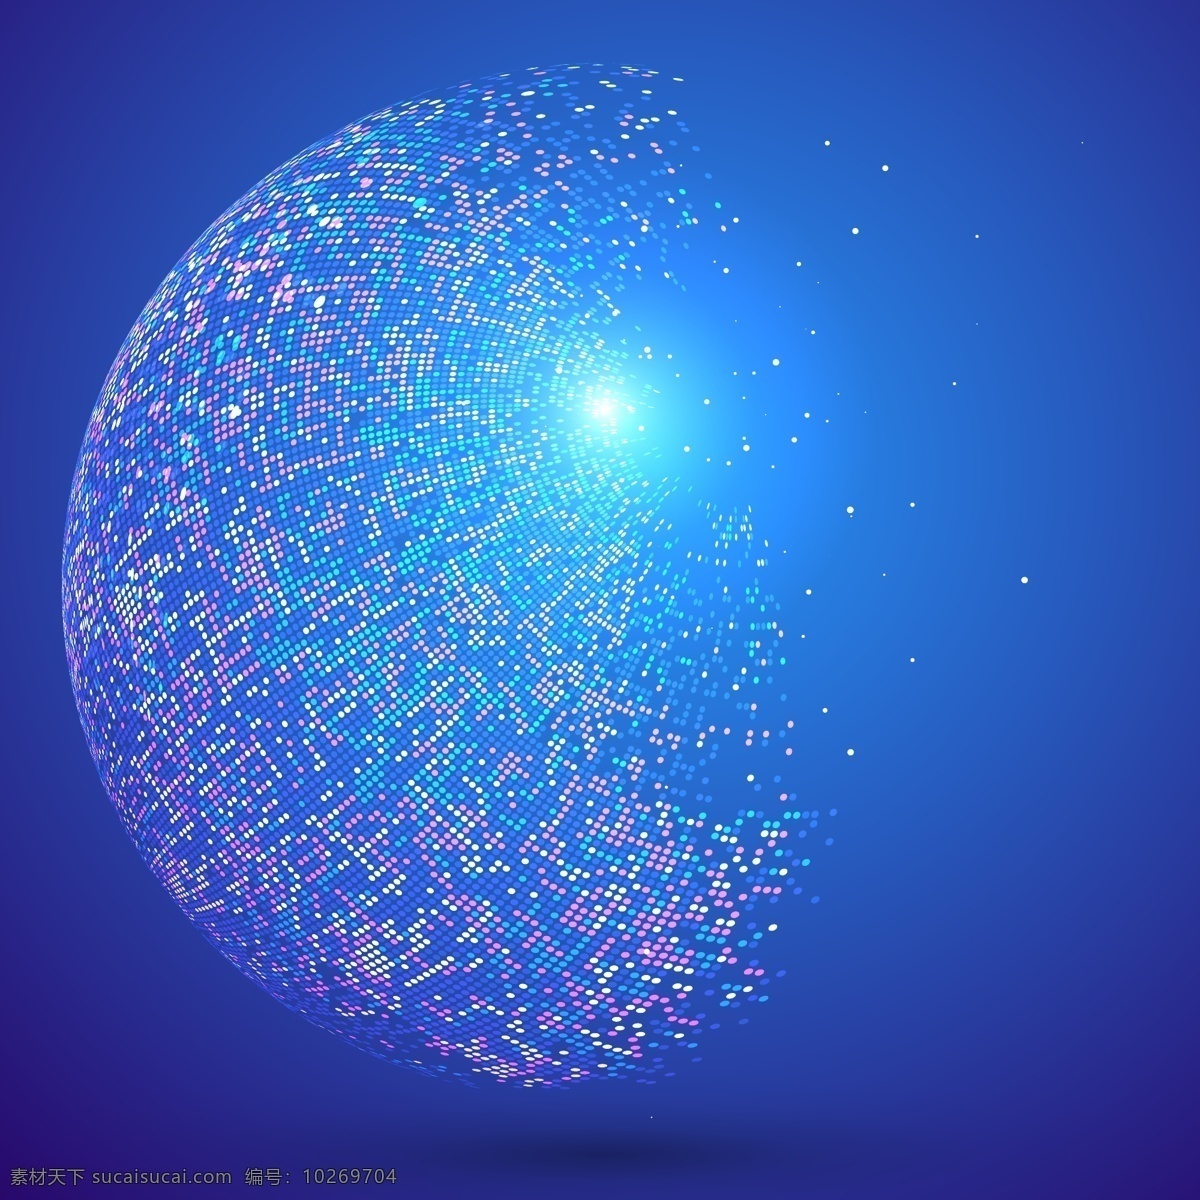 抽象地球 闪烁粒子 碎片 蓝色 科技 高端 蓝色背景 矢量素材